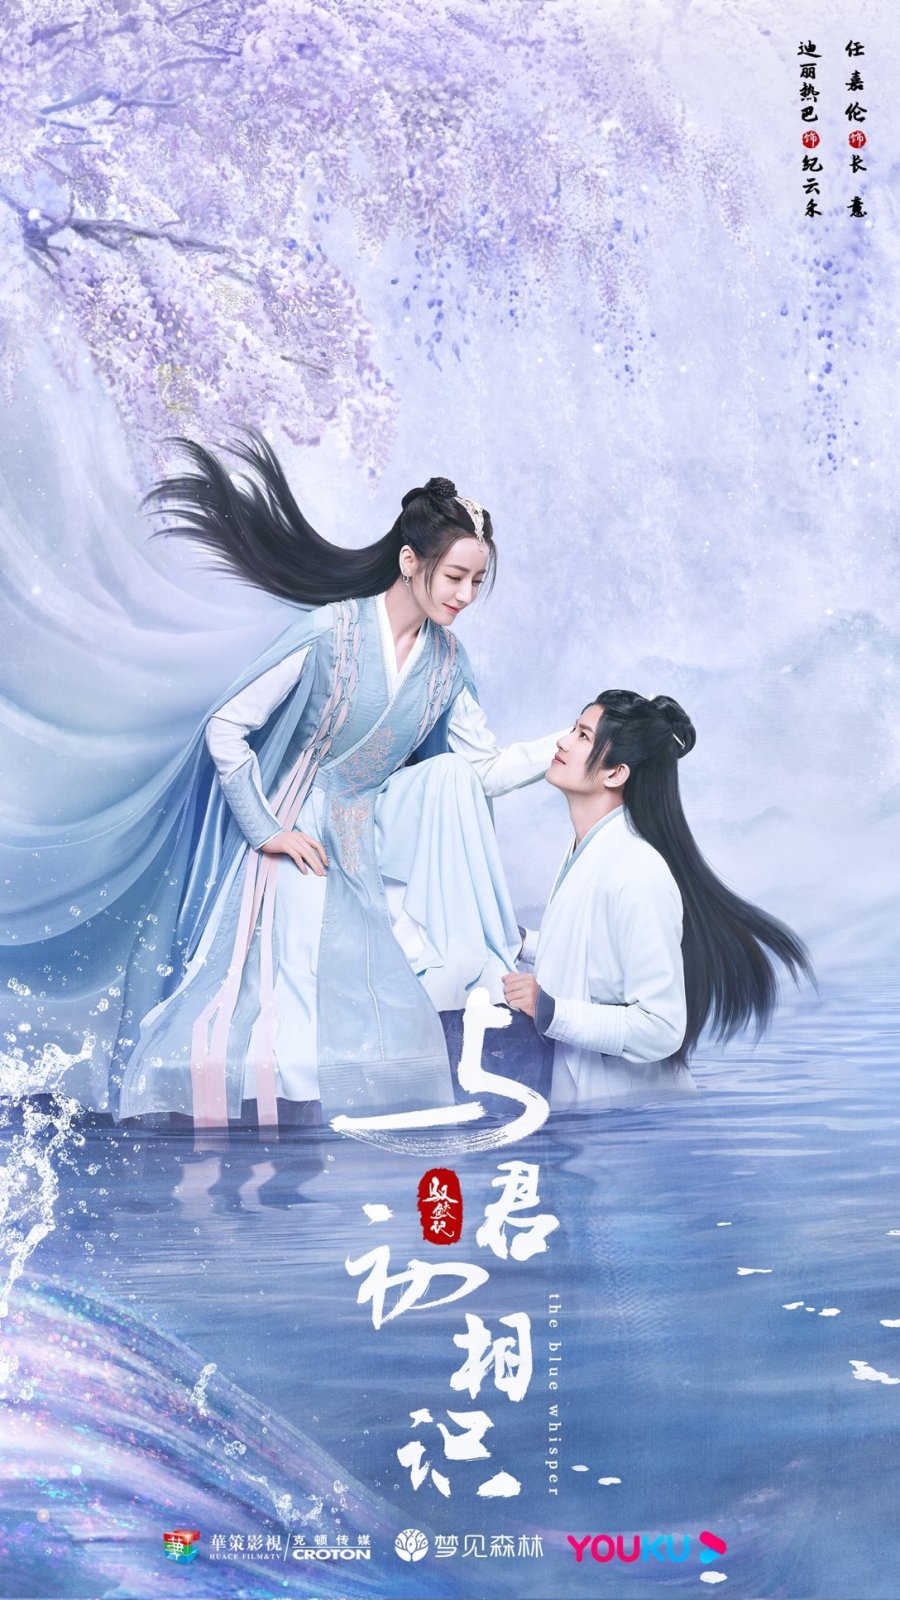 Phim tiên hiệp Trung Quốc hoặc nhất: Ngự kí thác ký – The xanh lơ whisper (2022)